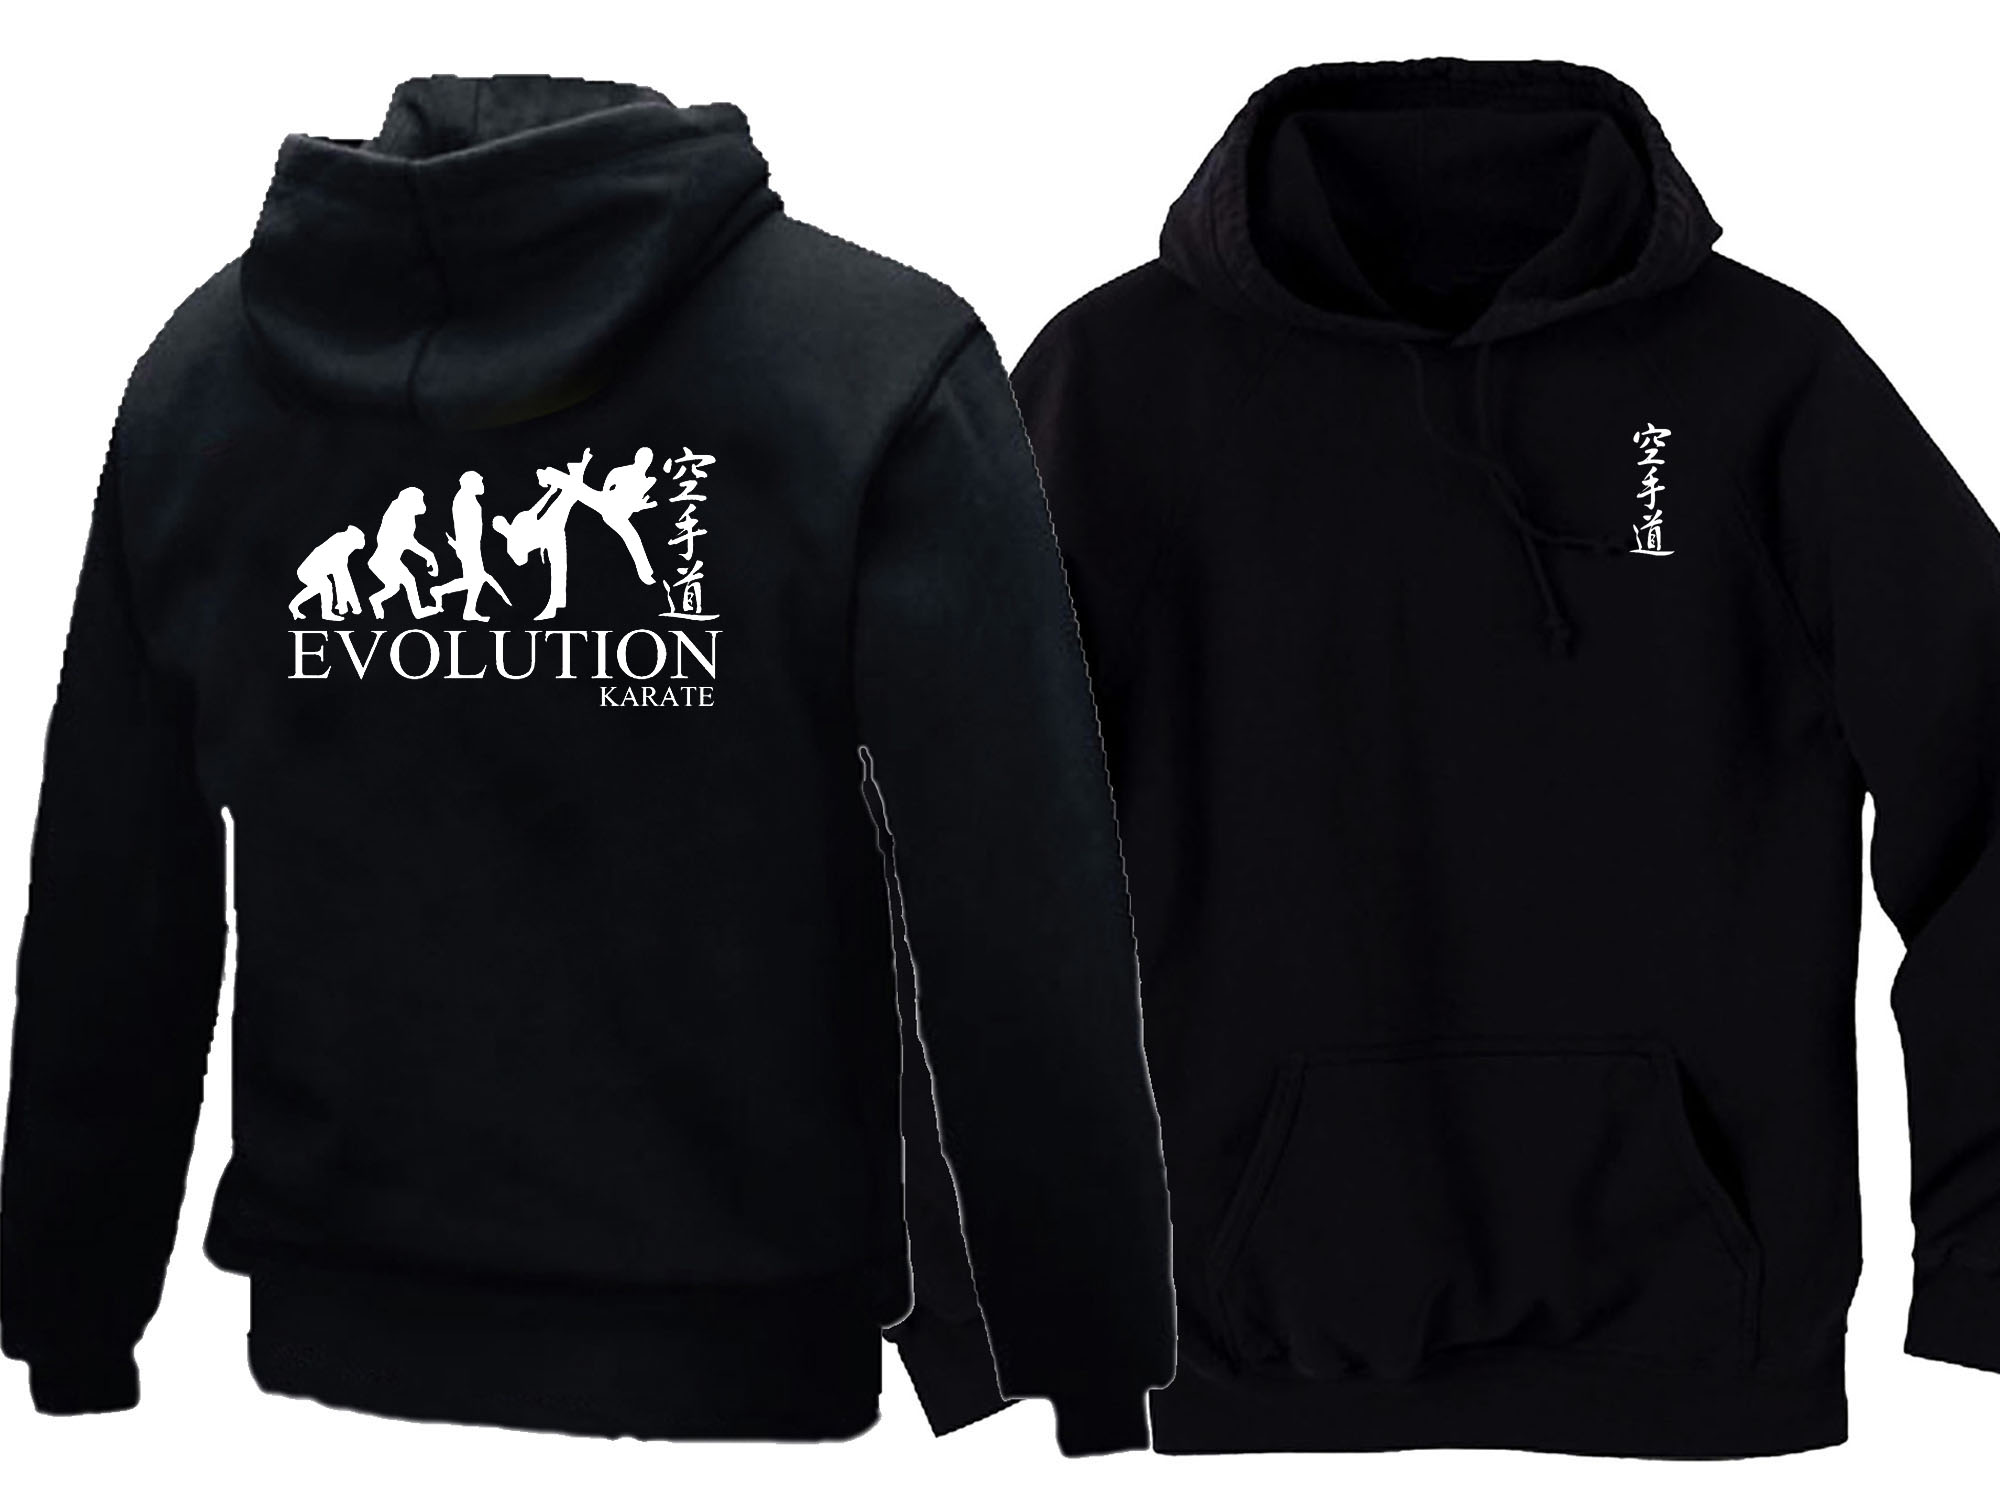 Evolution Karate hoodie -front & back image